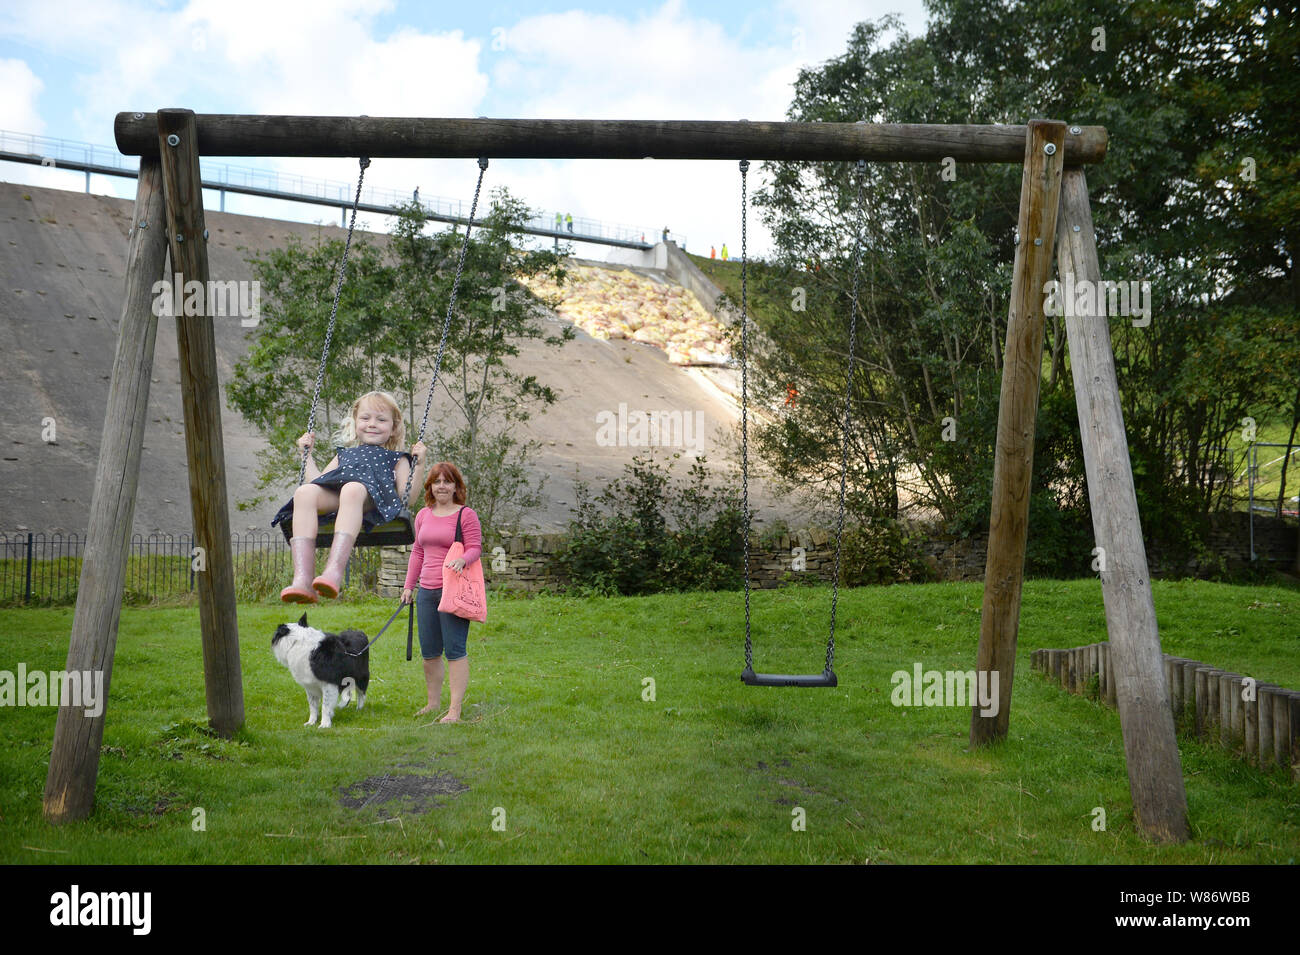 Étant donné la permission des parents, Lala Holden, 5, joue sur une balançoire accompagnée par sa mère, Sally Curley, tandis que dans le travail de fond continue de soutenir le réservoir du barrage de Toddbrook près du village de Whaley Bridge, Derbyshire, après qu'il a été endommagé d'une forte pluie. Banque D'Images